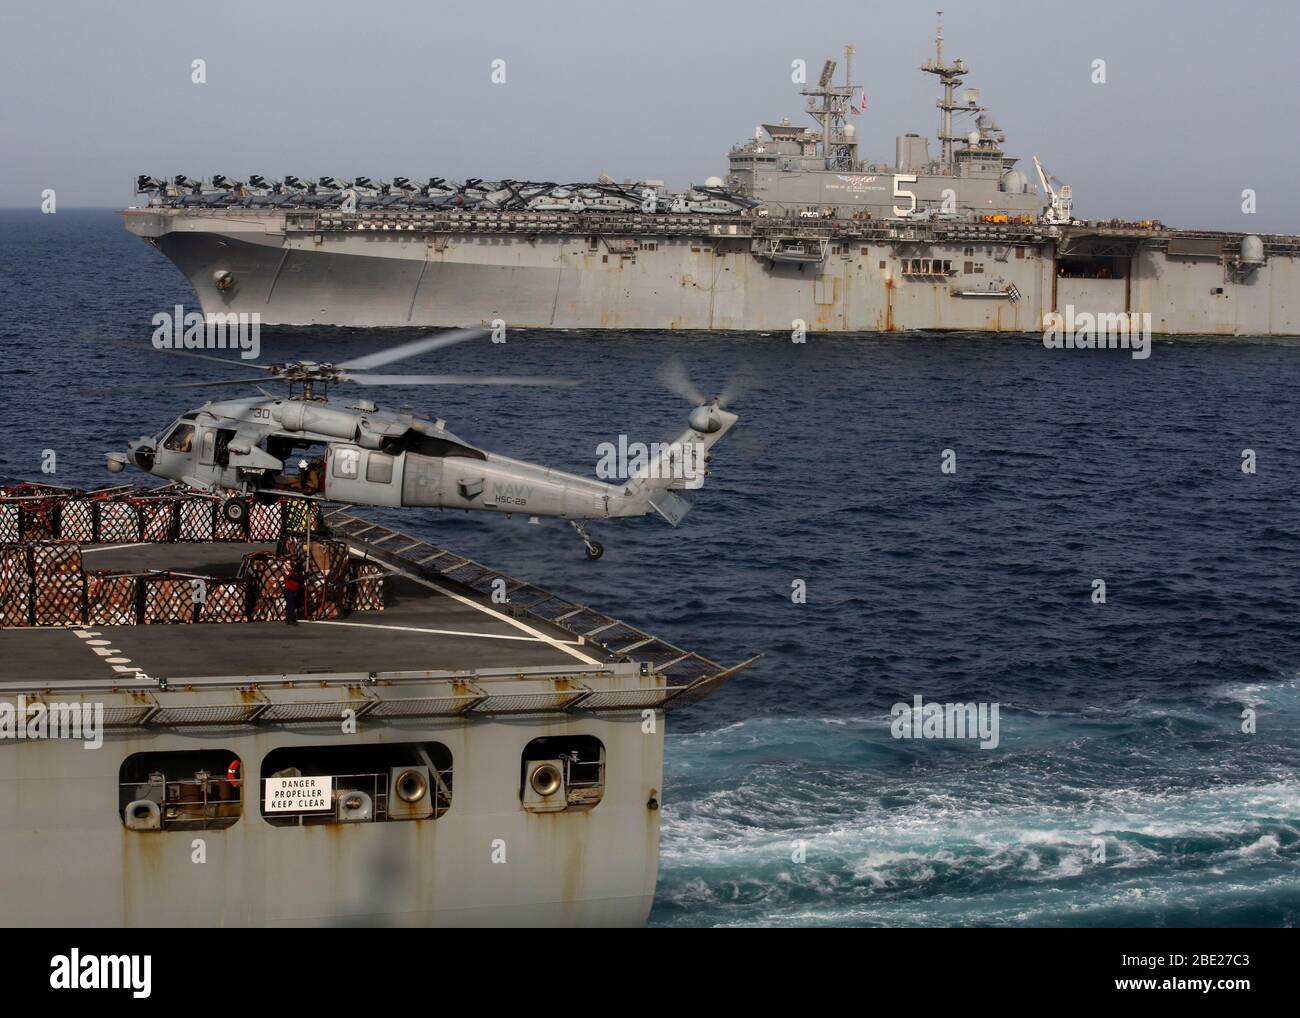 200408-M-MV109-1079 5. EINSATZGEBIET der US-FLOTTE (8. April 2020) EIN US-Navy MH-60S Sea Hawk, der dem amphibischen Sturmschiff USS Bataan (LHD-5) zugewiesen wurde, holt Paletten vom Kampfdeck des Trockenfracht- und Munitionsschiffes USNS William McLean (T-AKE-12) während einer Wiederauffüllung auf See 8. April 2020 ab. Bataan, mit eingeschifften 26. Marine Expeditionary Unit wird in den 5. US-Flottenbereich eingesetzt, um die Seestandlagen zu unterstützen, um die maritime Stabilität und Sicherheit in der Zentralregion zu gewährleisten, indem es das Mittelmeer und den Pazifik durch den westlichen Indischen Ozean und drei Strate verbindet Stockfoto